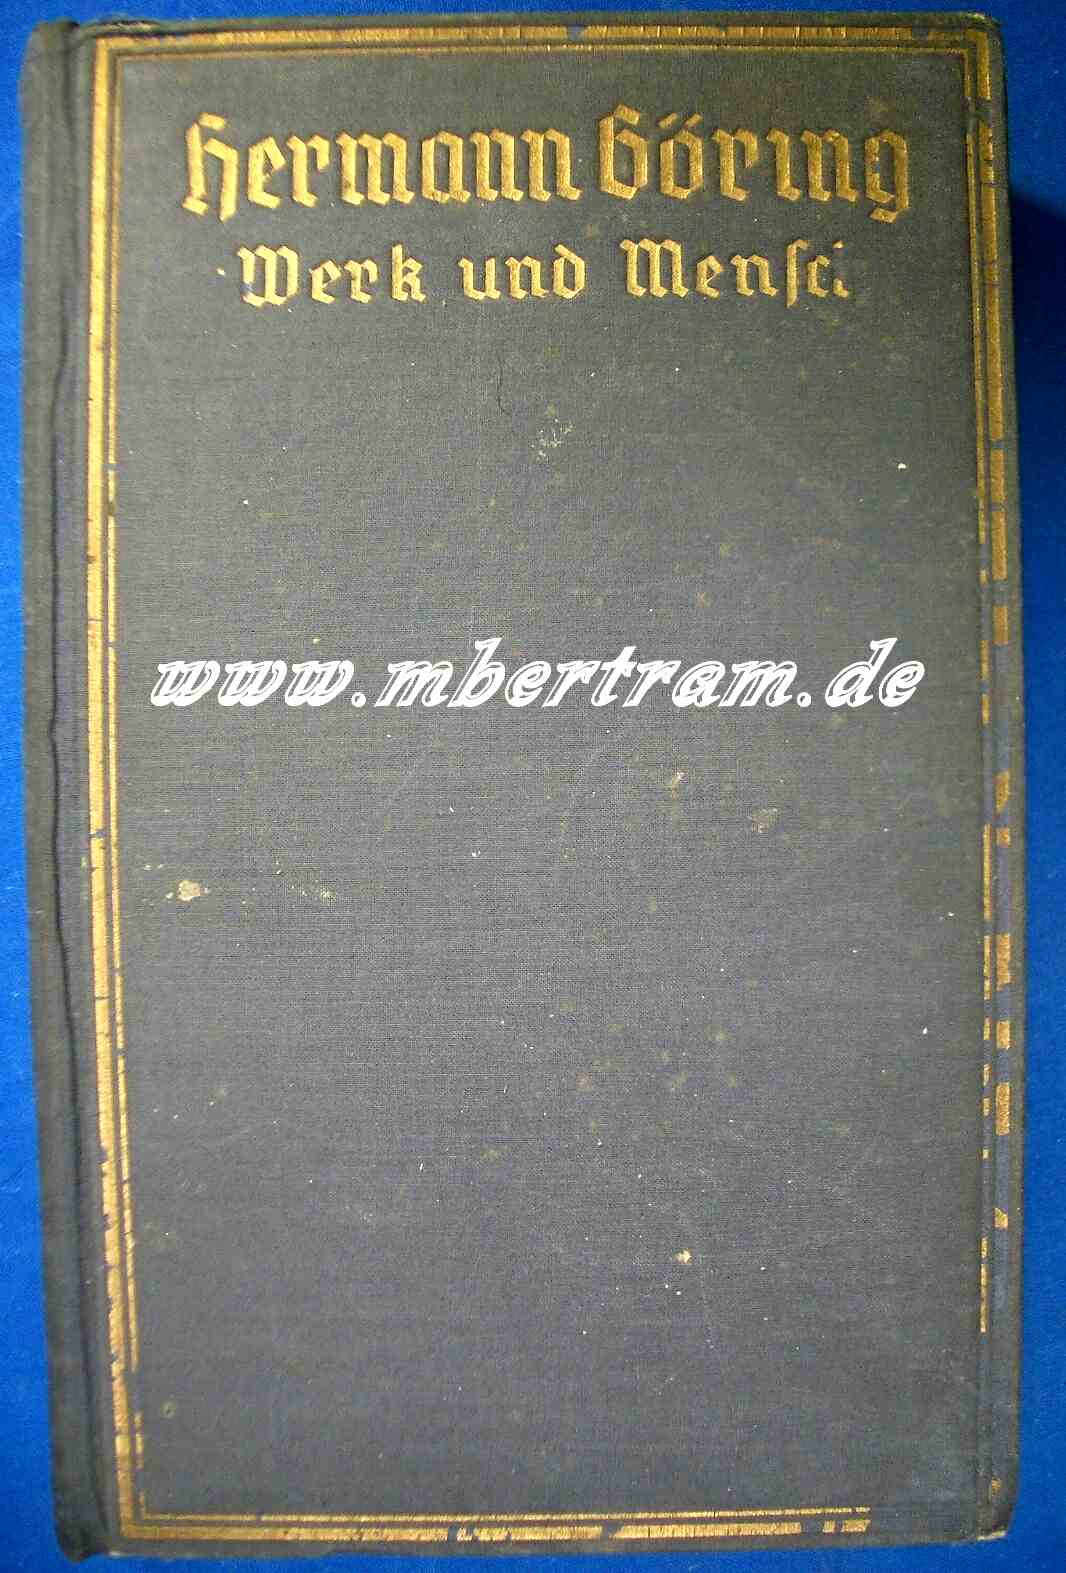 Gritzbach, Erich: Hermann Göring. Werk und Mensch, 1938